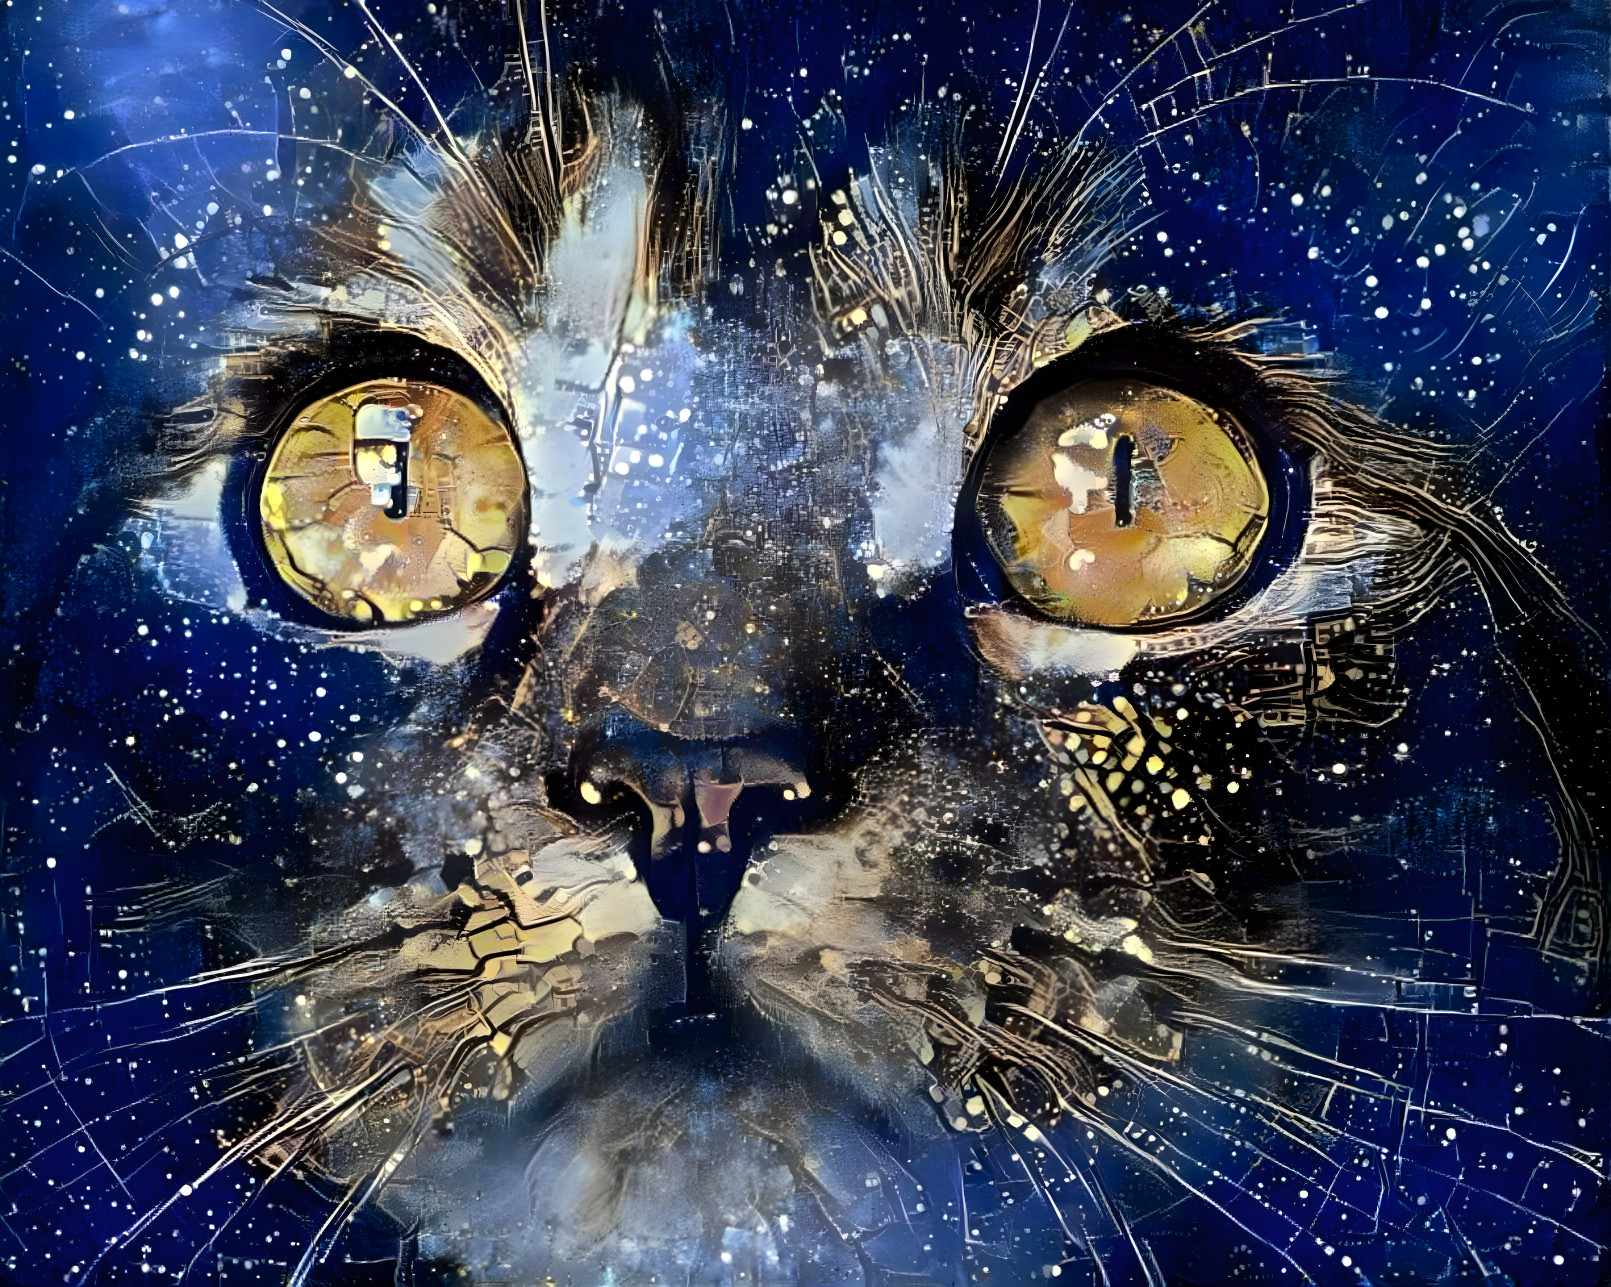 Cat Nebula